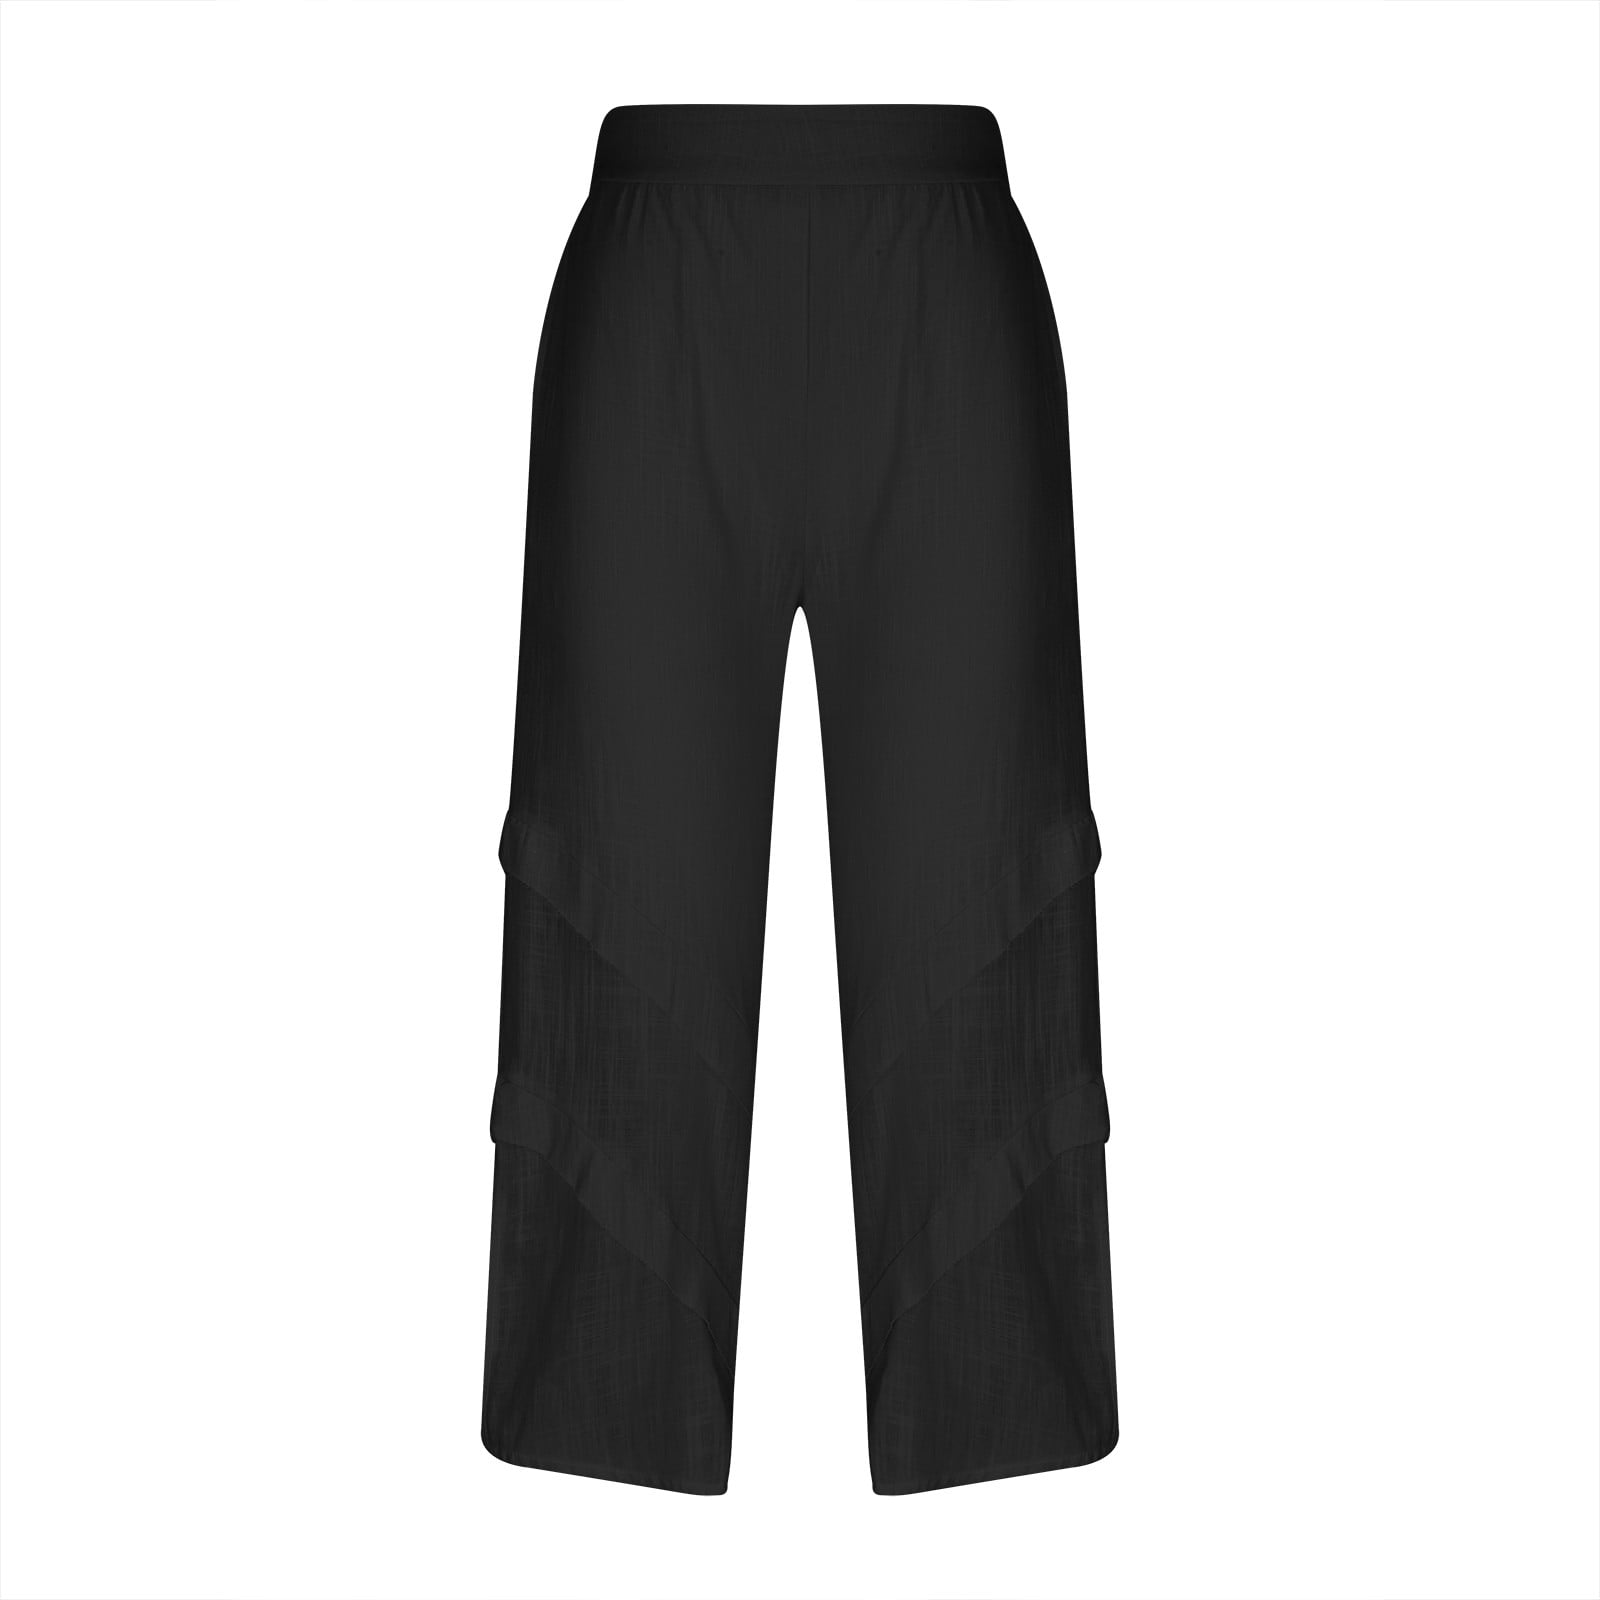 CZHJS Women's Solid Color Cotton Linen Pants Clearance Elastic